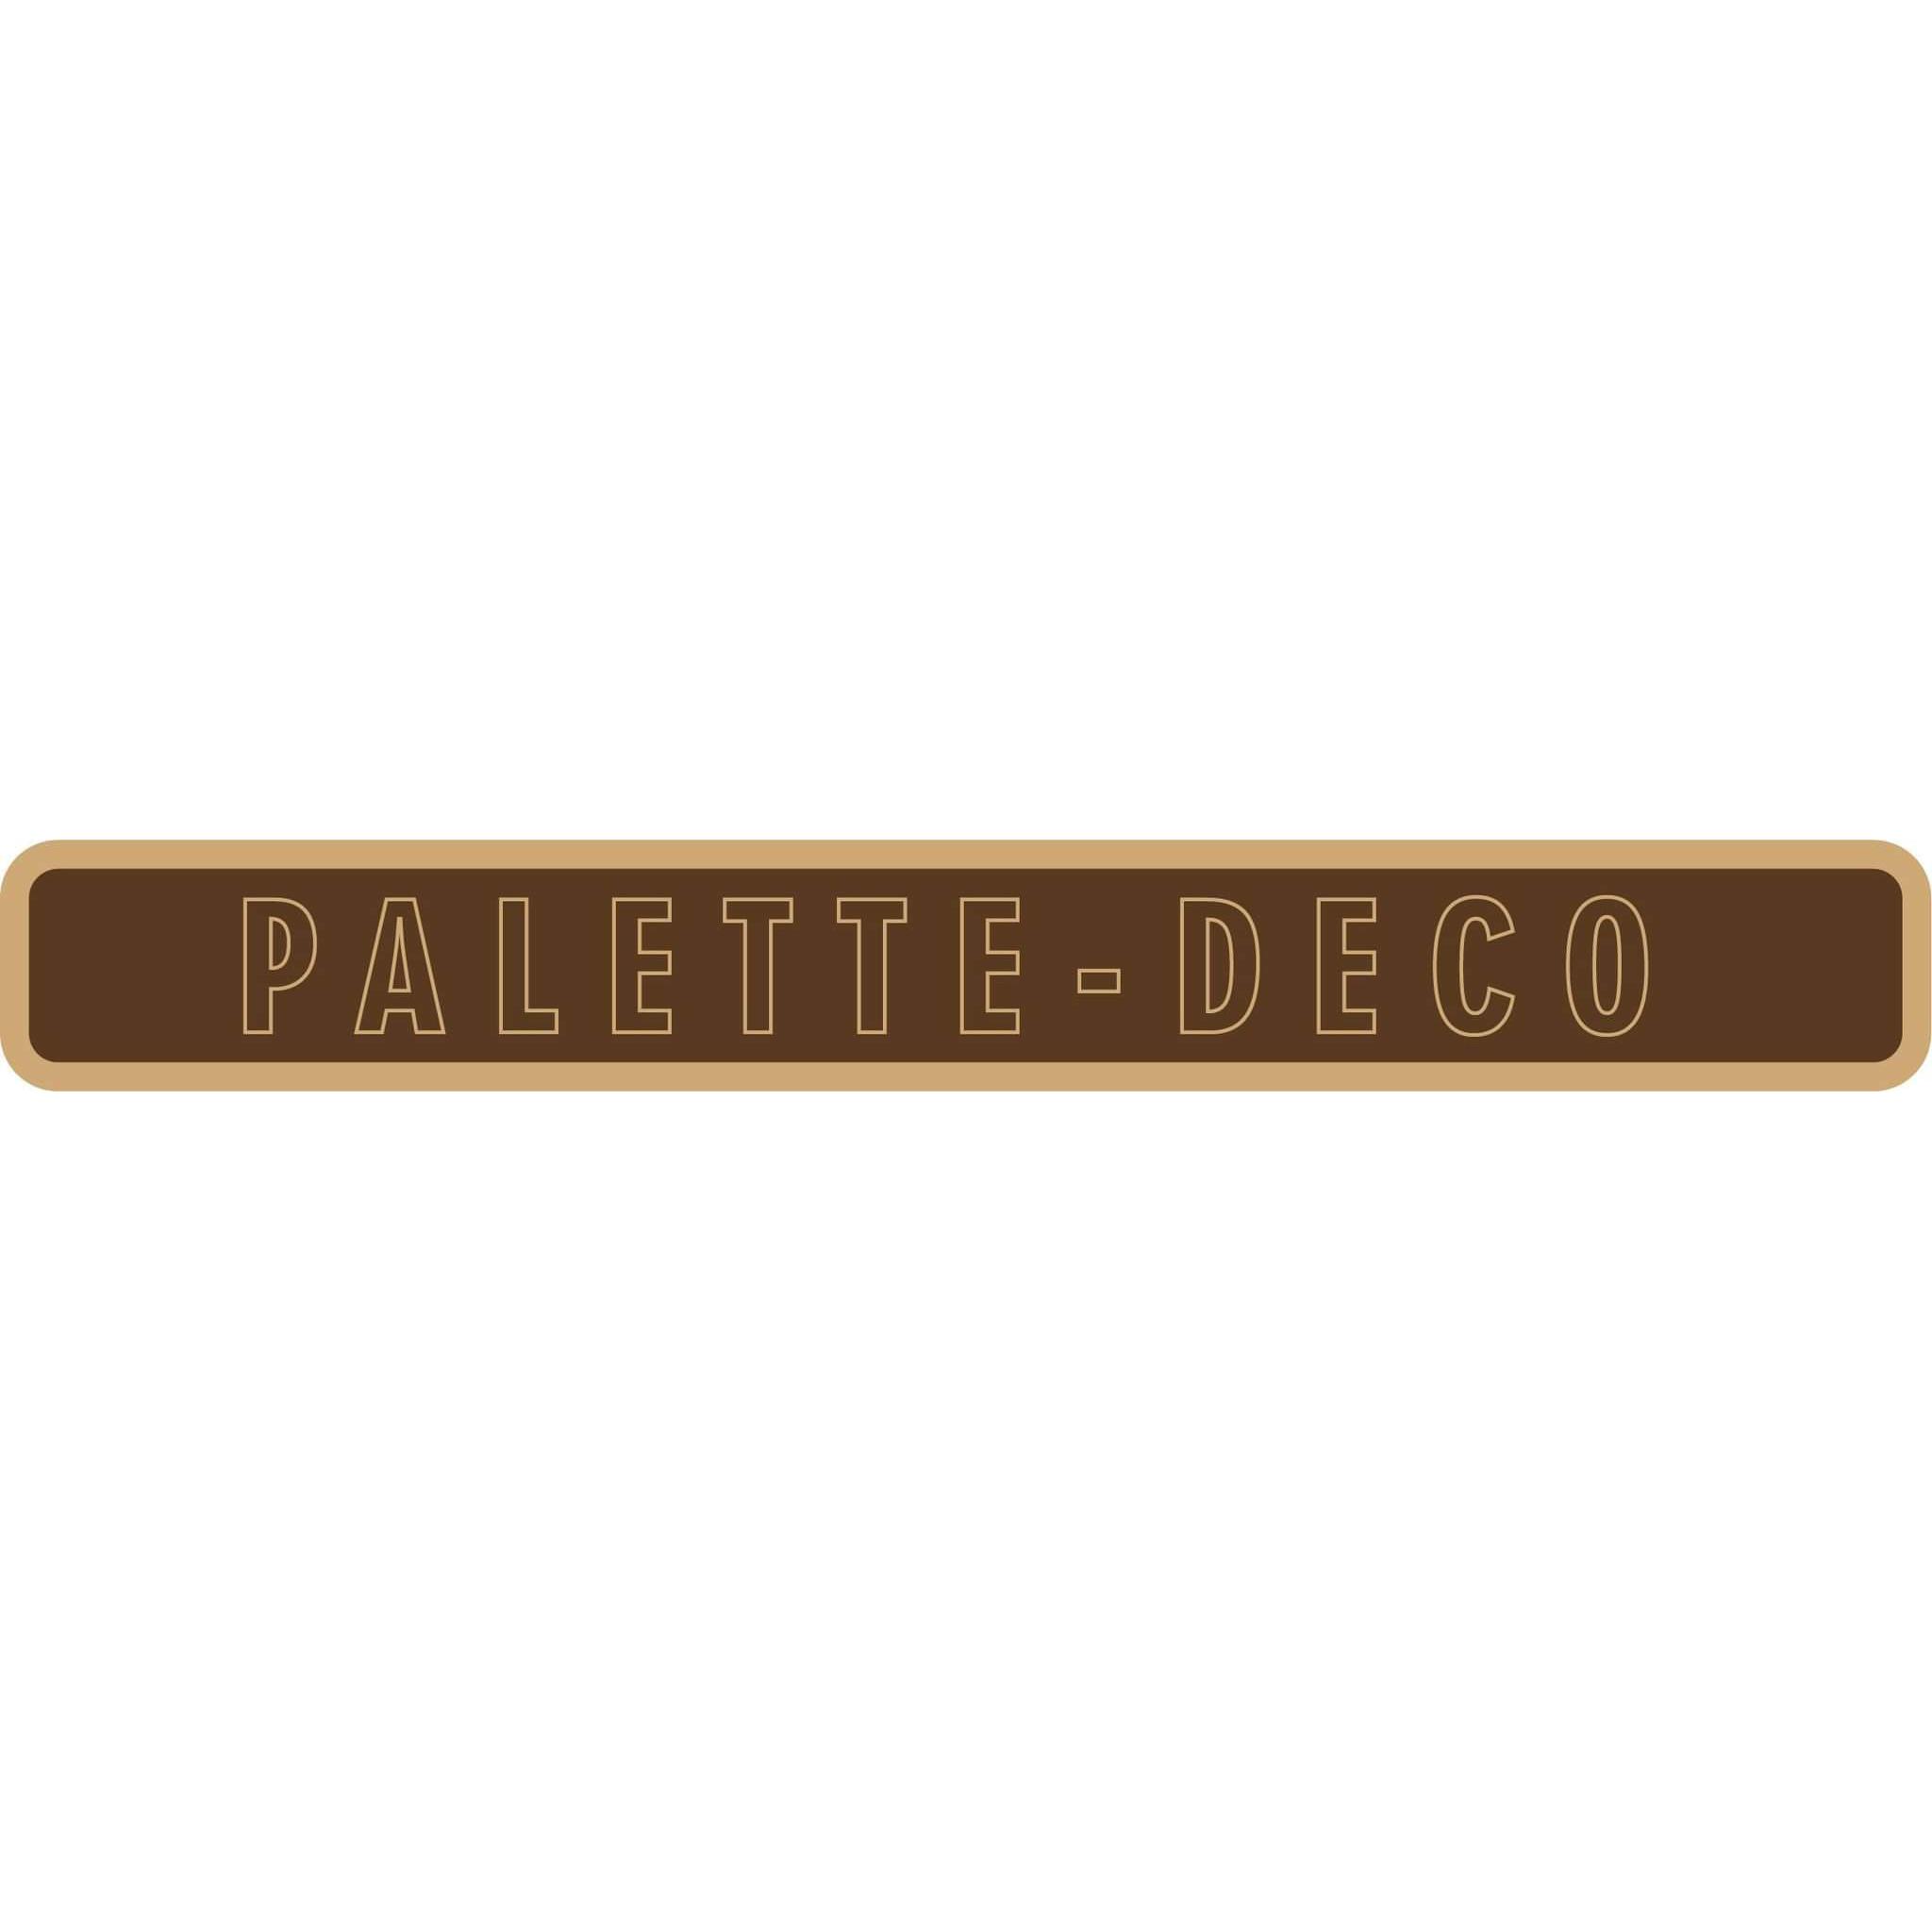 Palette-deco Logo